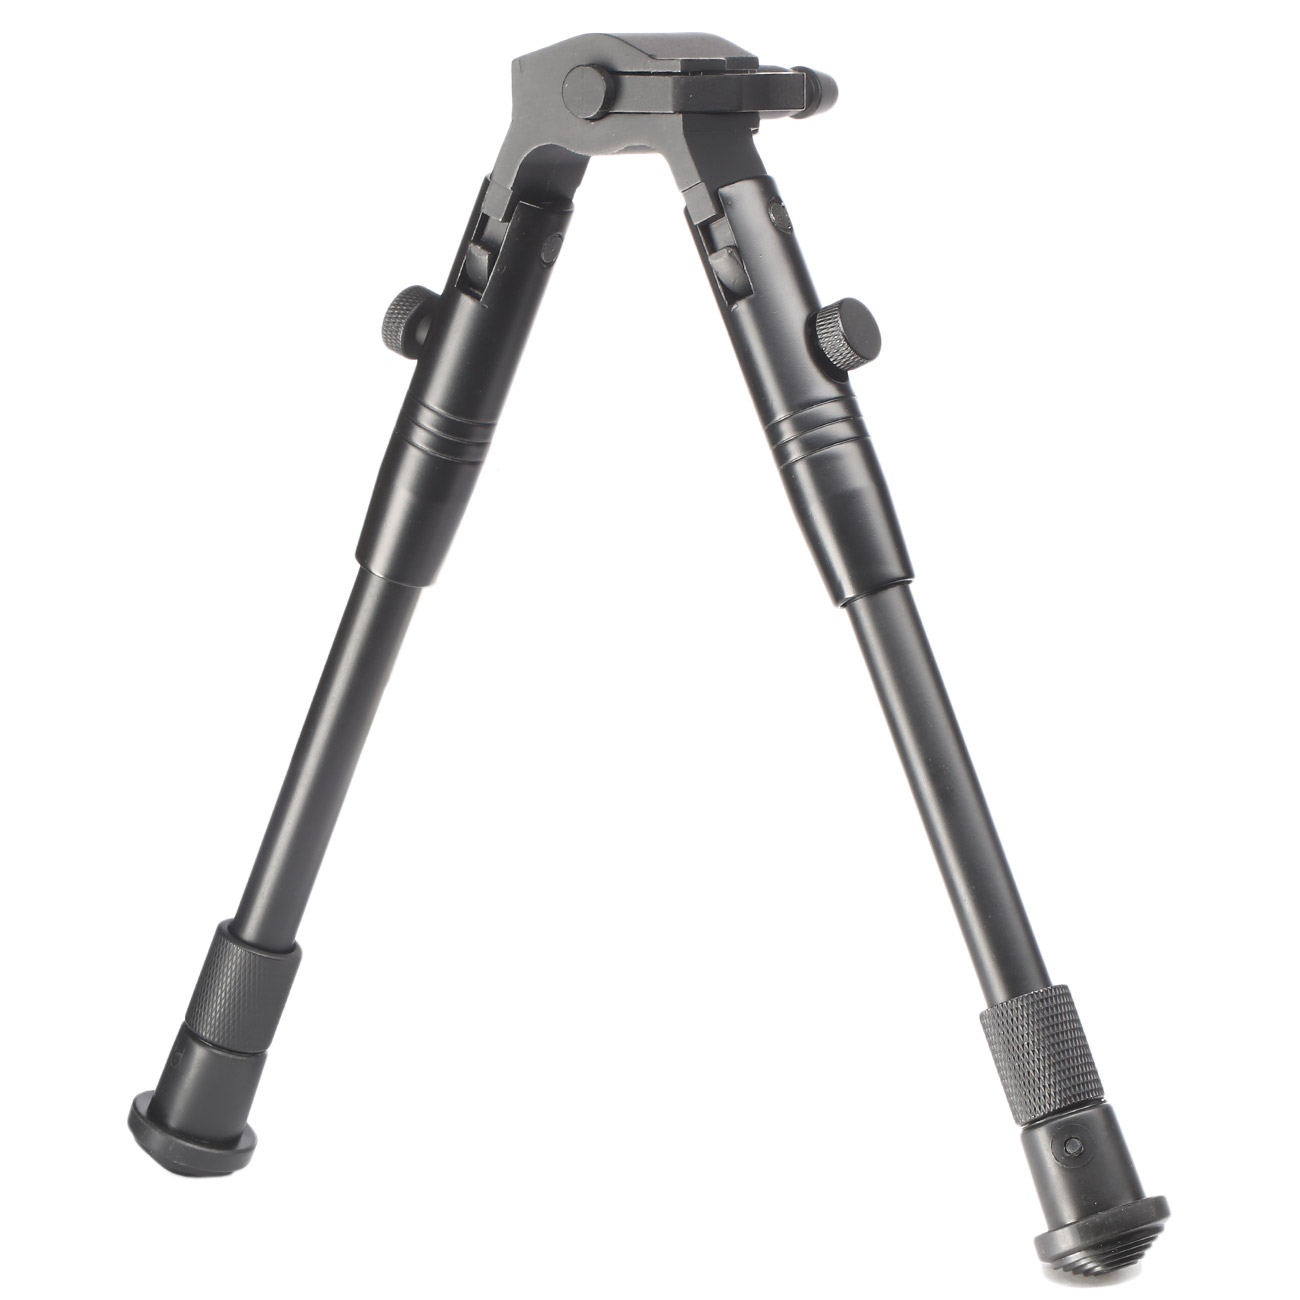 ASG AW .308 Universal Sniper-Zweibein mit Gummifüße m. Direct-Mount Montage schwarz Bild 1